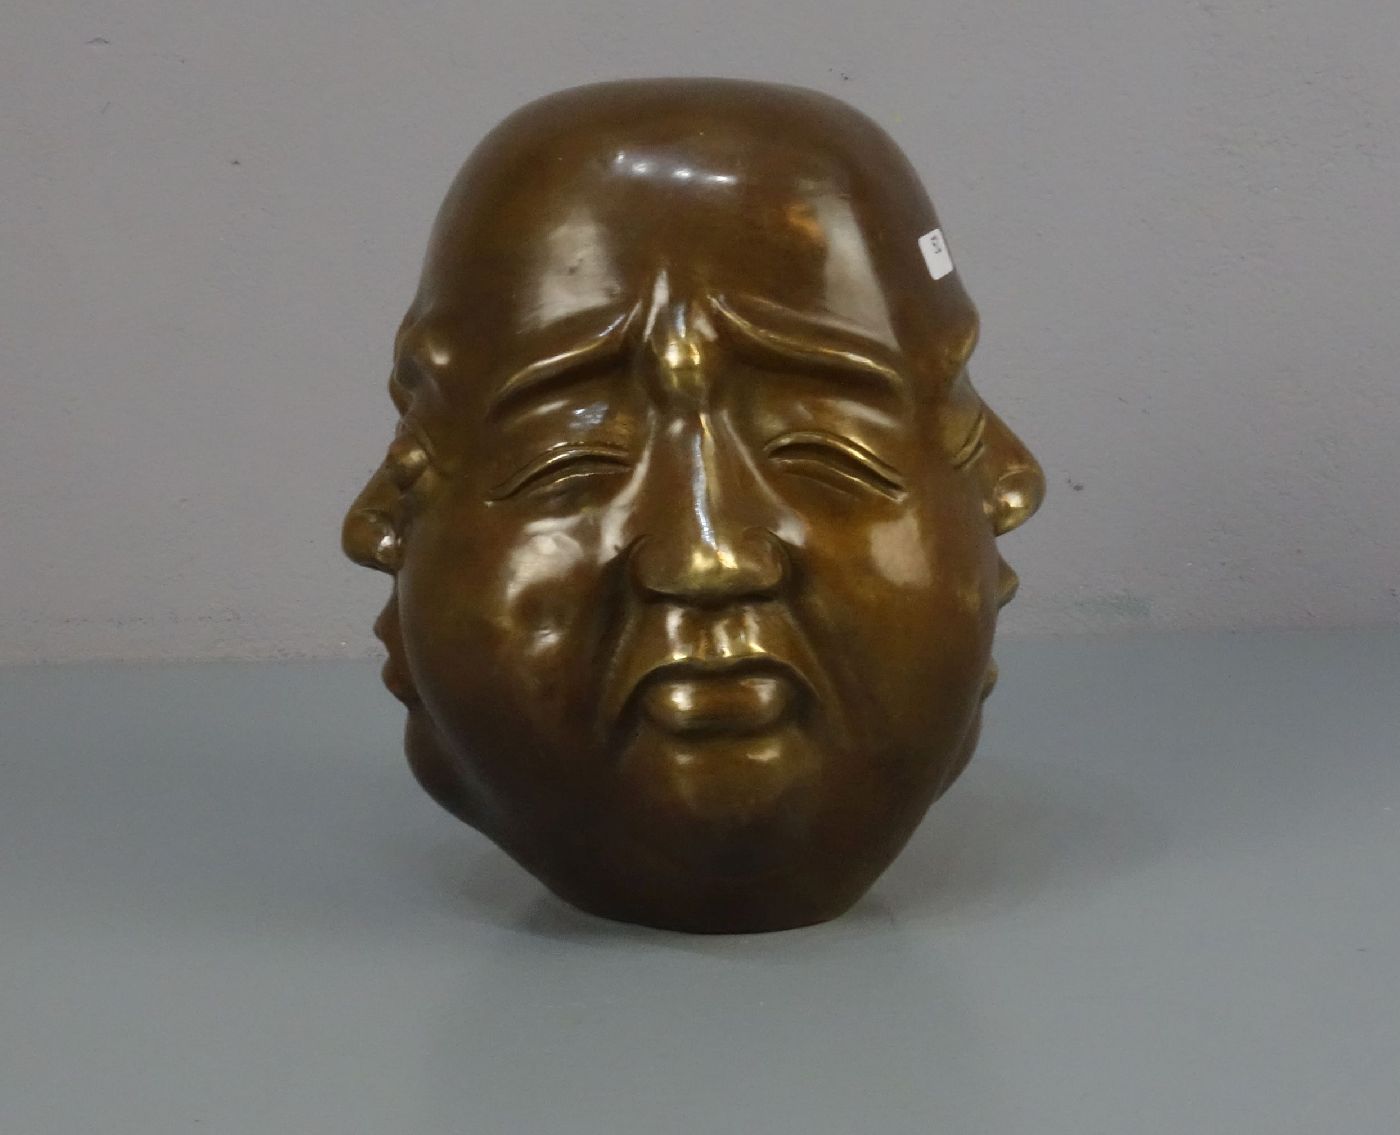 CHINESISCHER BILDHAUER des 20. Jh., Skulptur / sculpture: "Kopf mit vier Gesichtern", Bronze, - Image 4 of 5